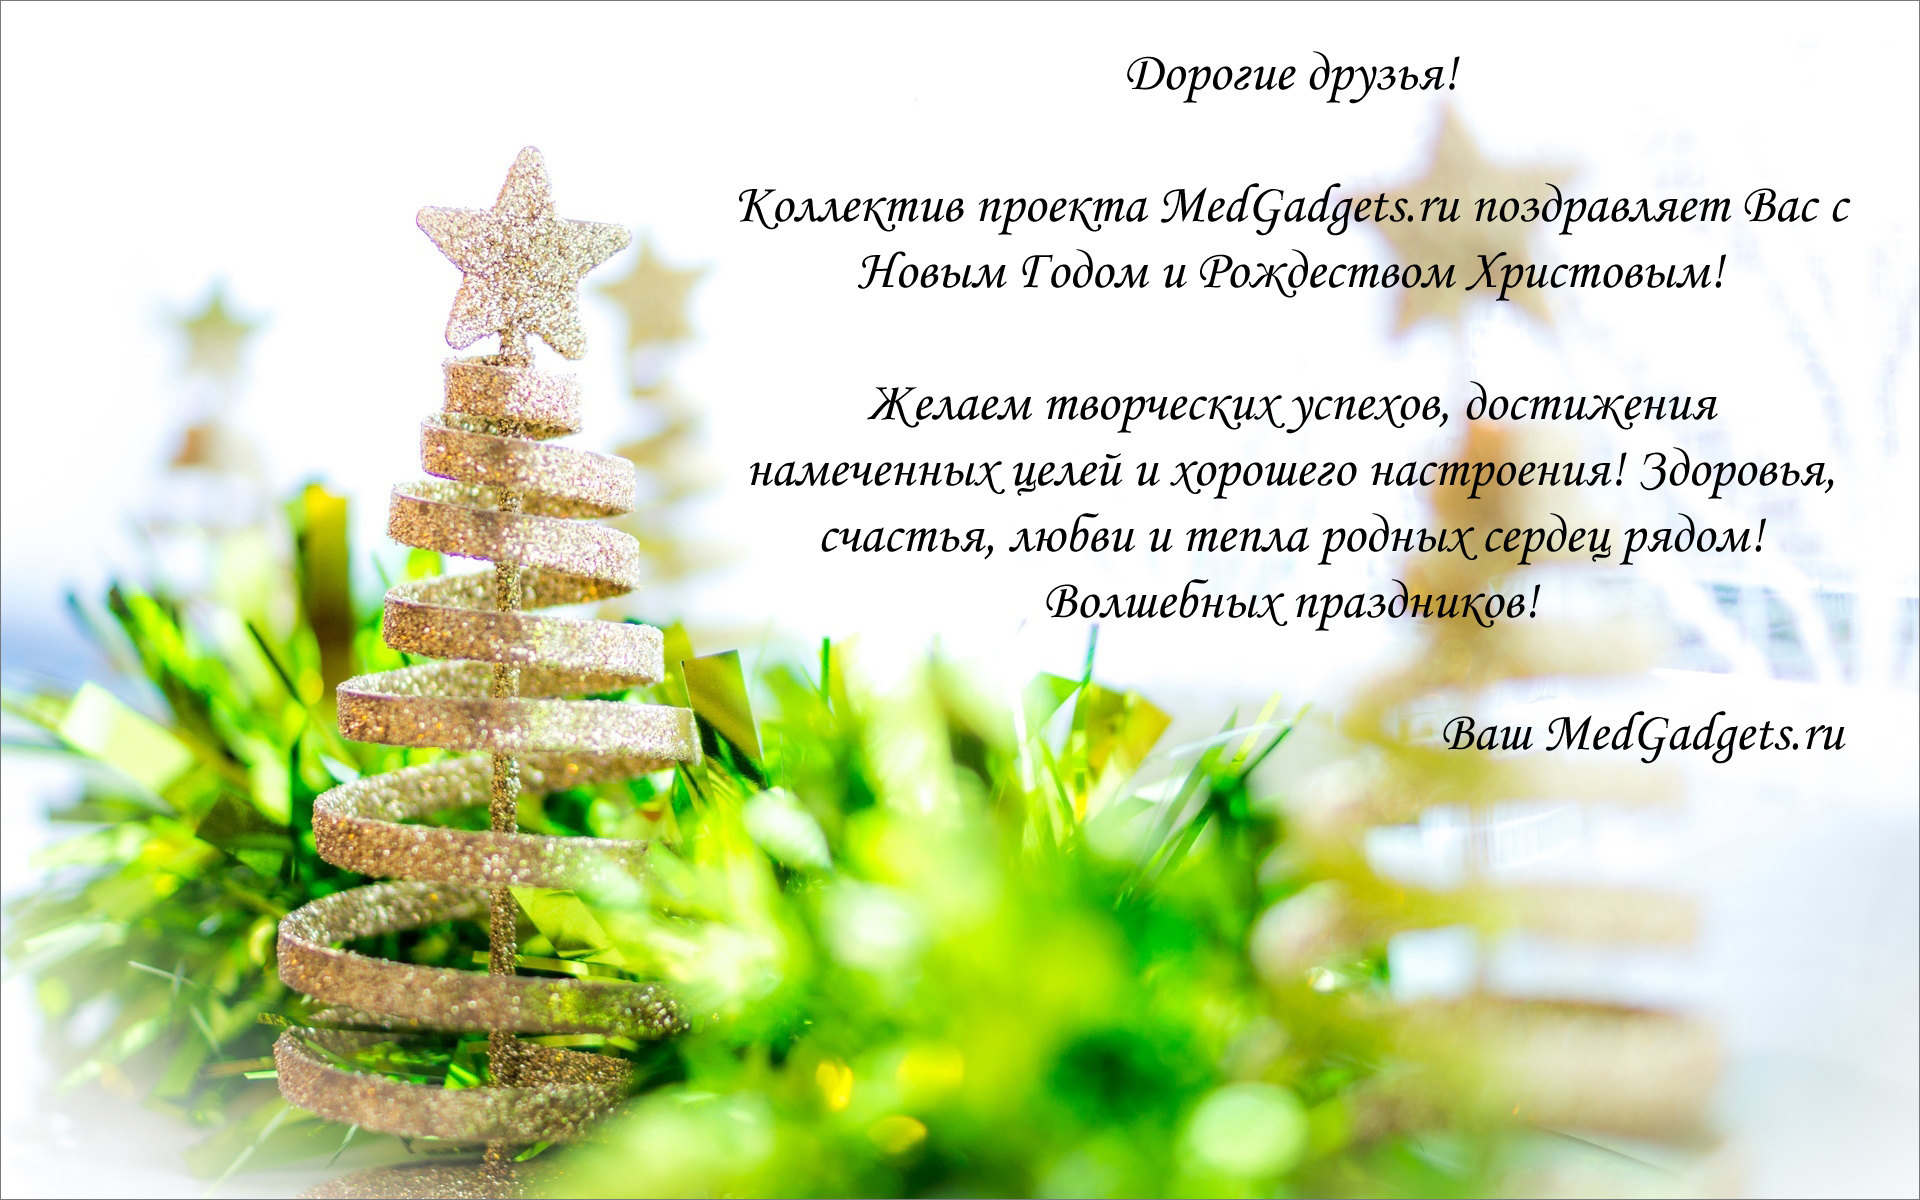 new_year_happy_holidays_20141220_1937995809